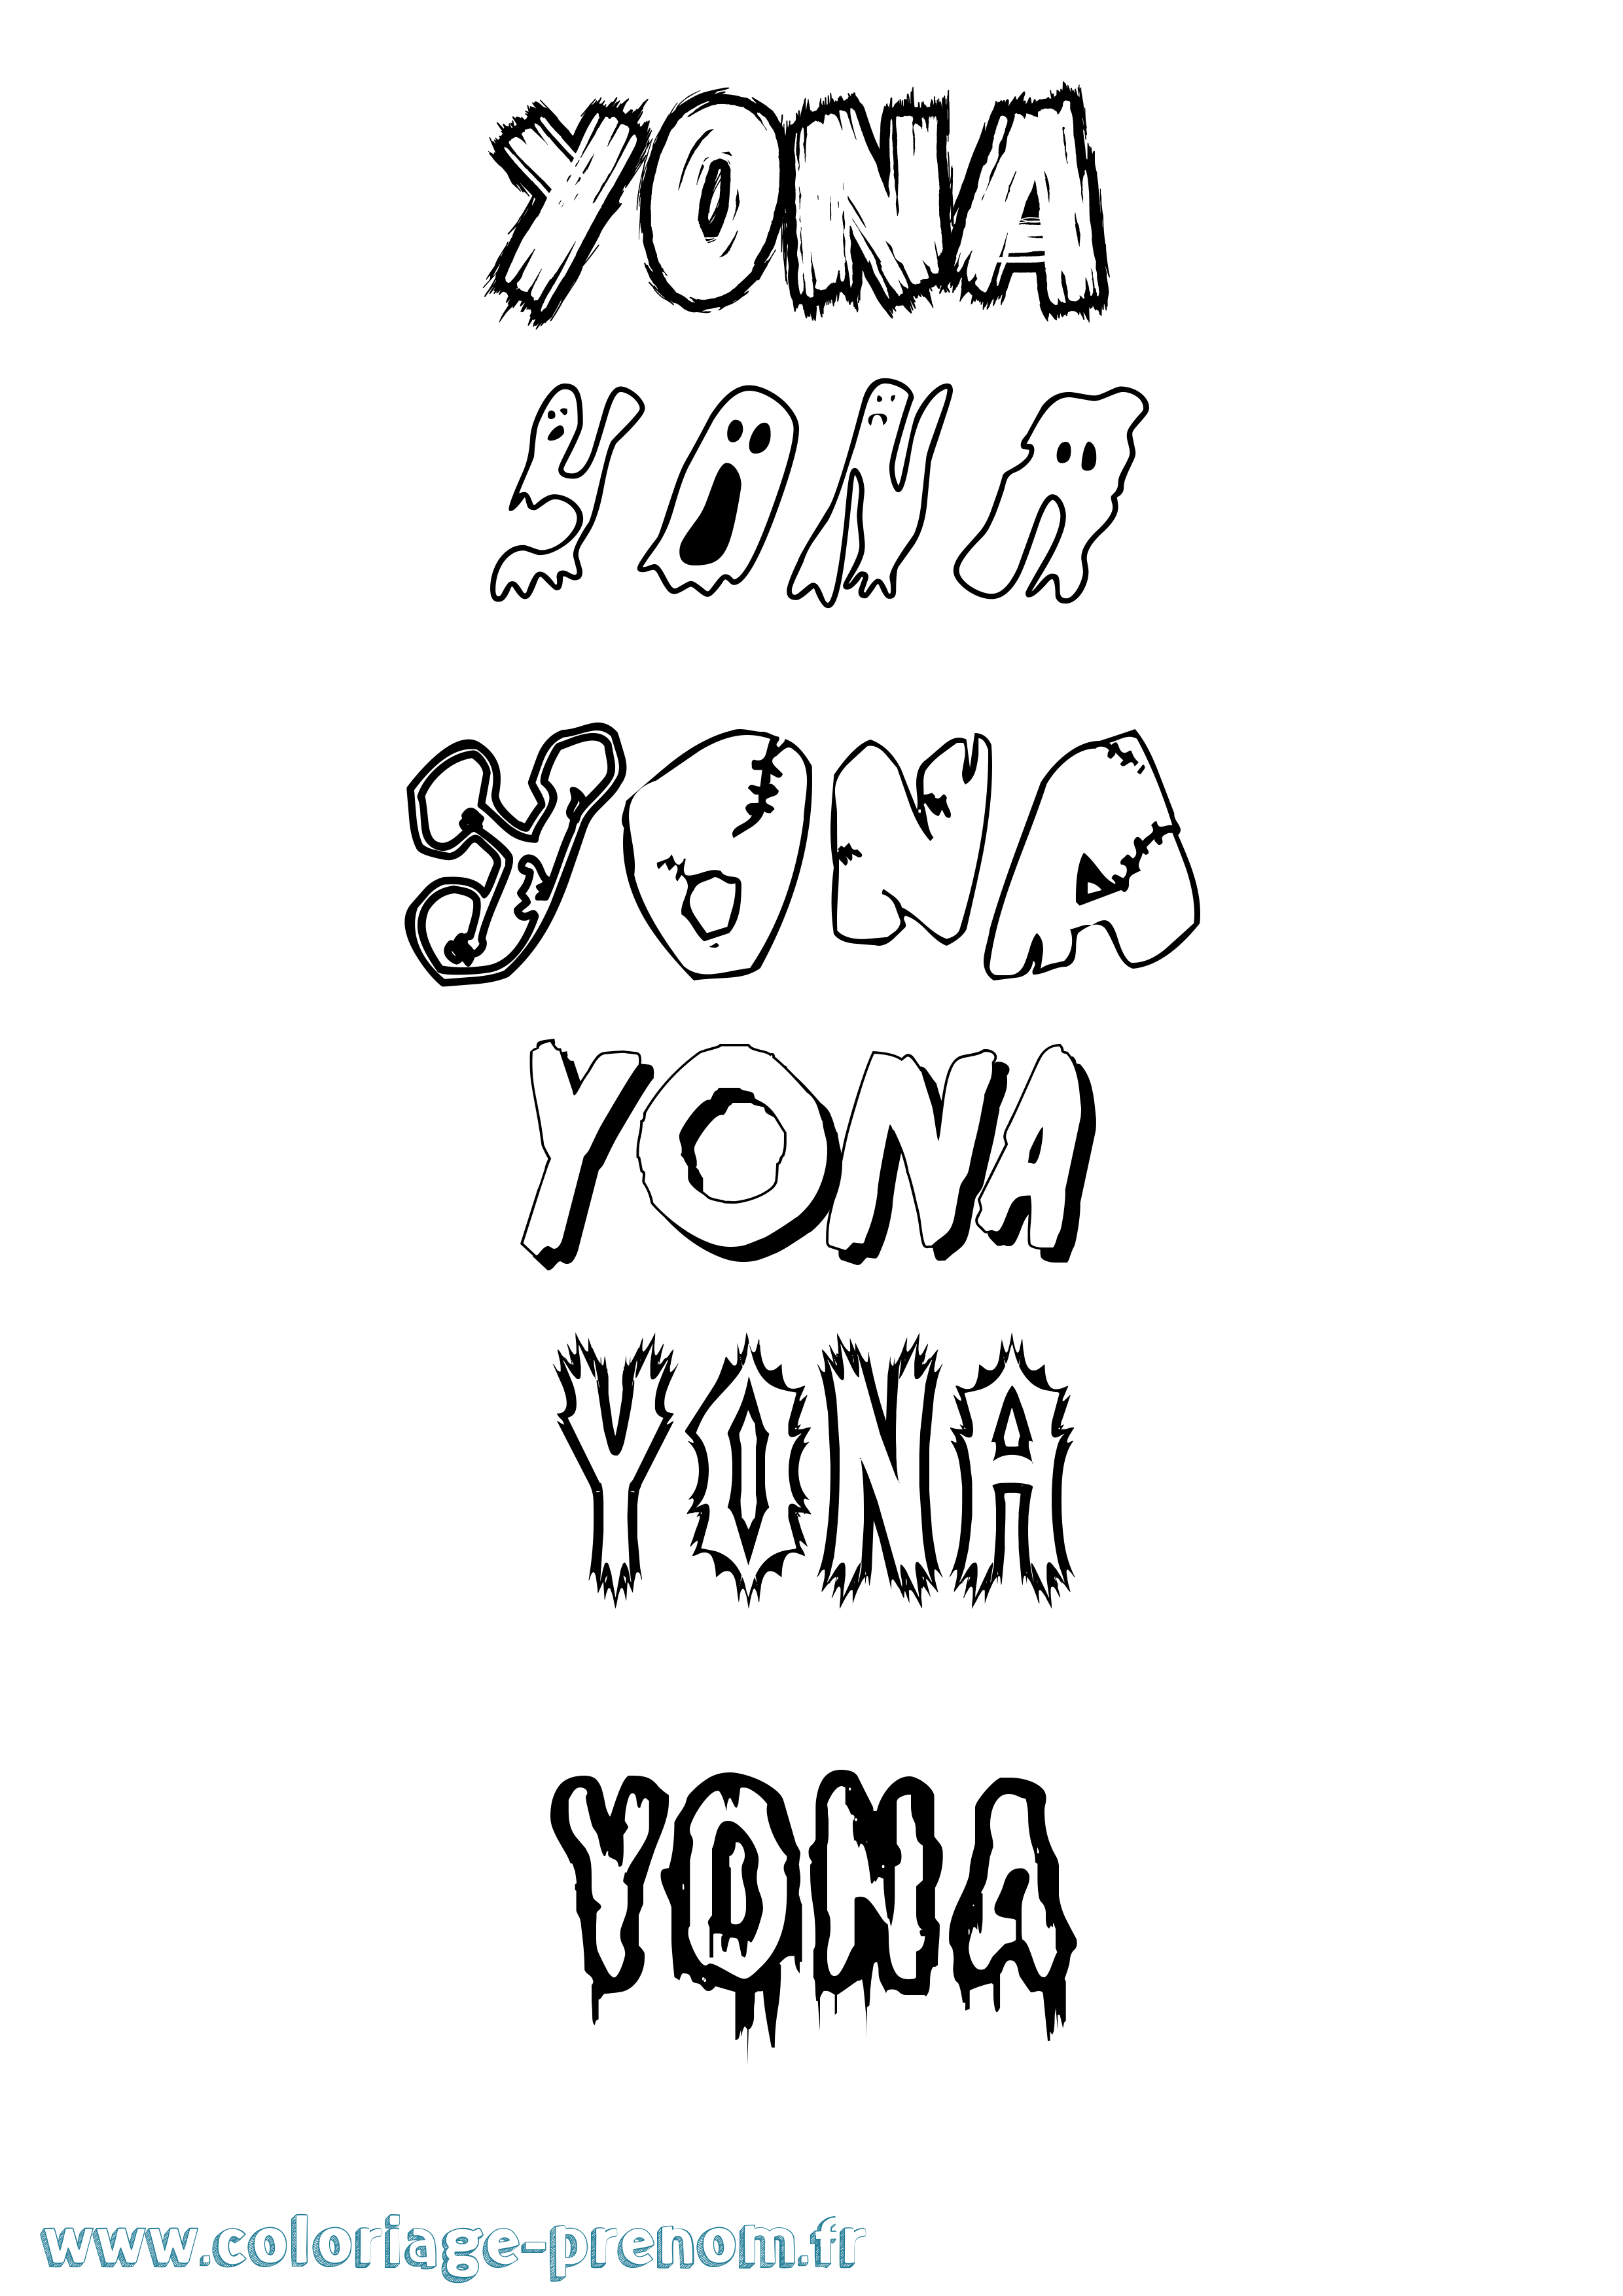 Coloriage prénom Yona Frisson